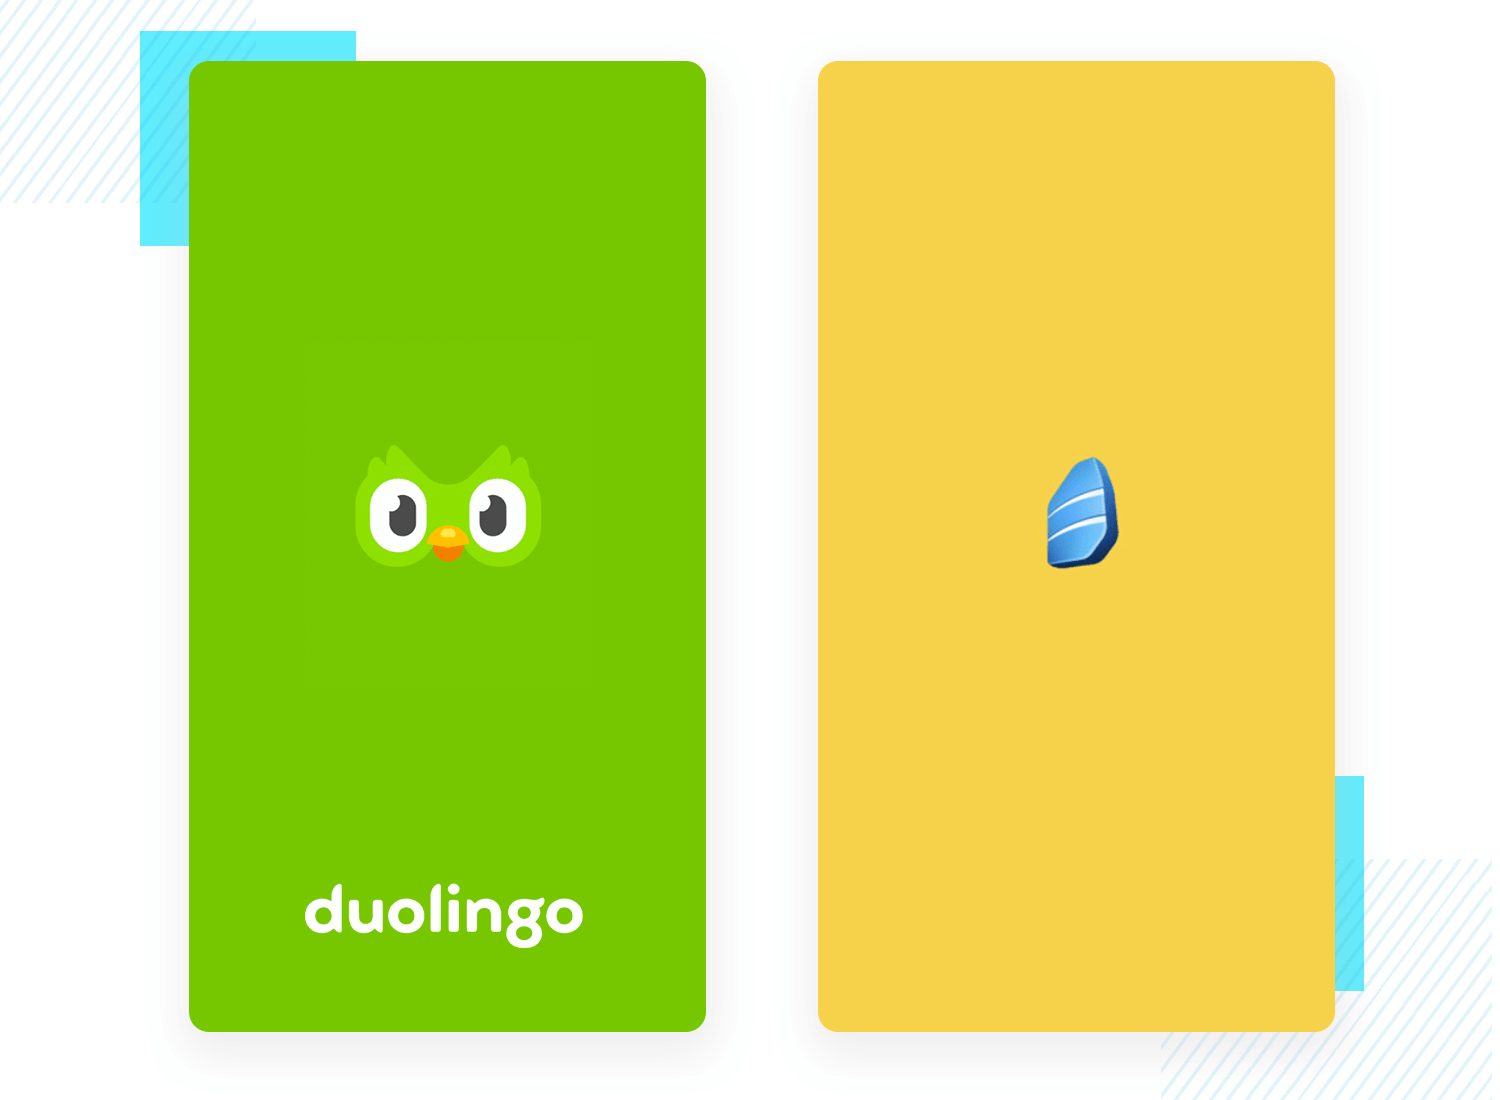 Duolingo and Rosetta Stone splash screen examples